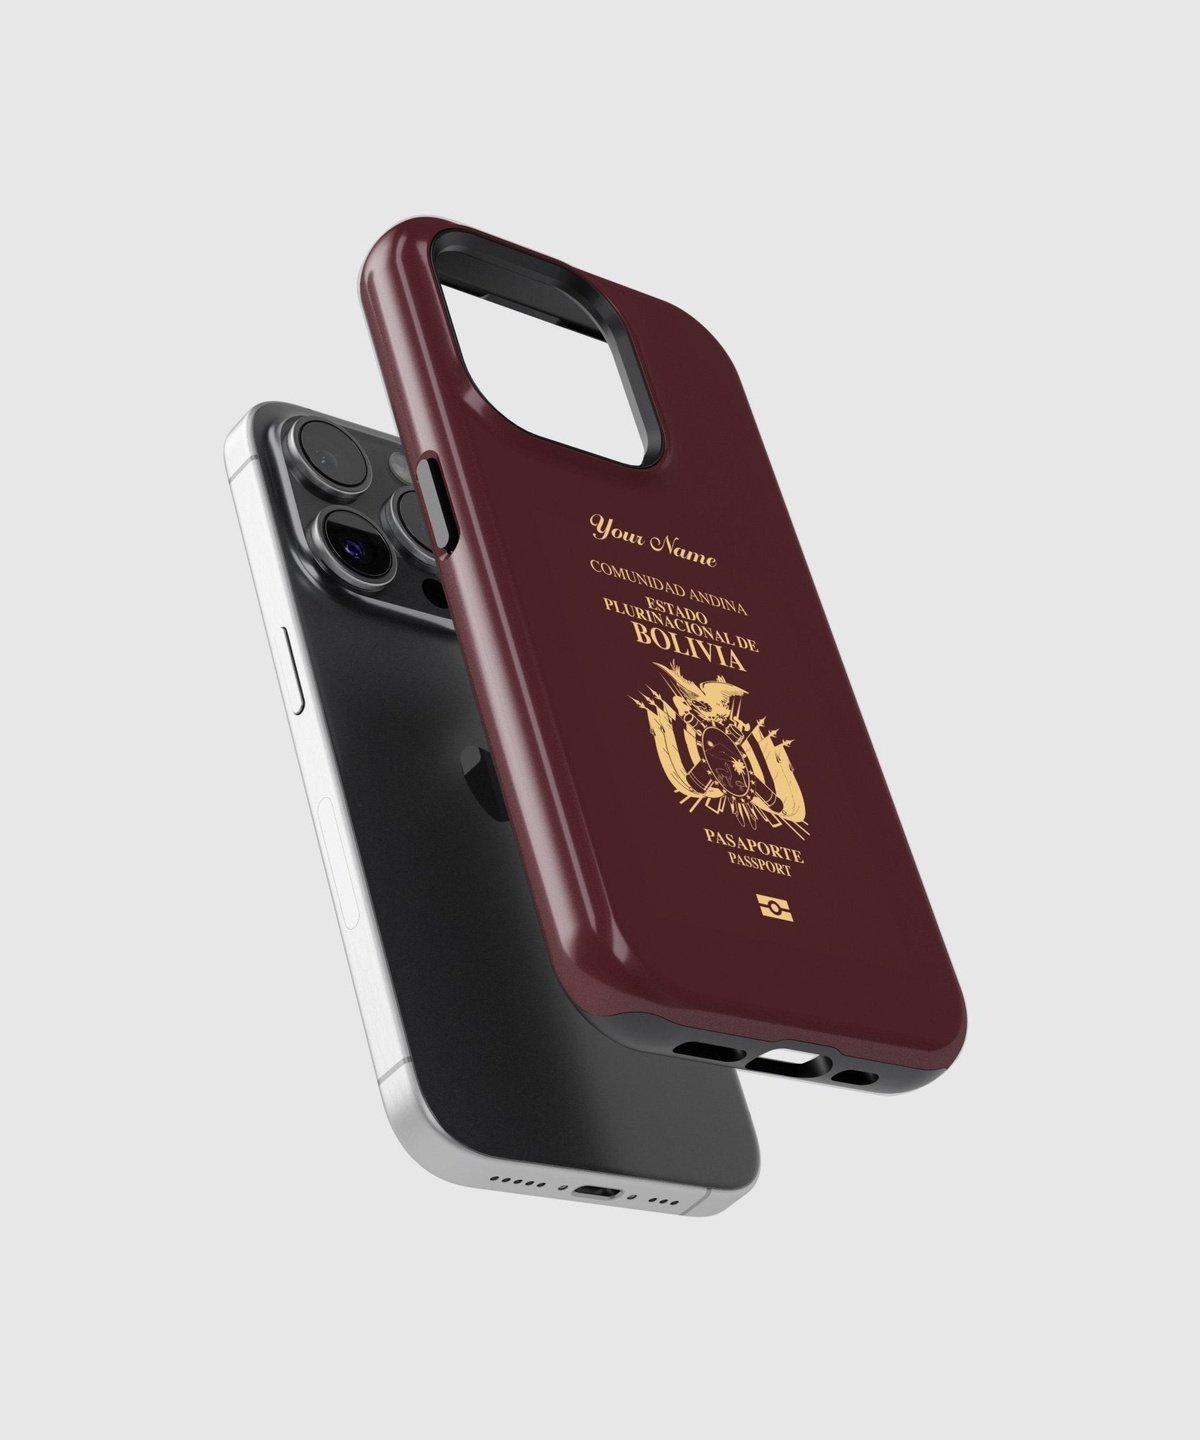 Bolivia Passport - iPhone Case